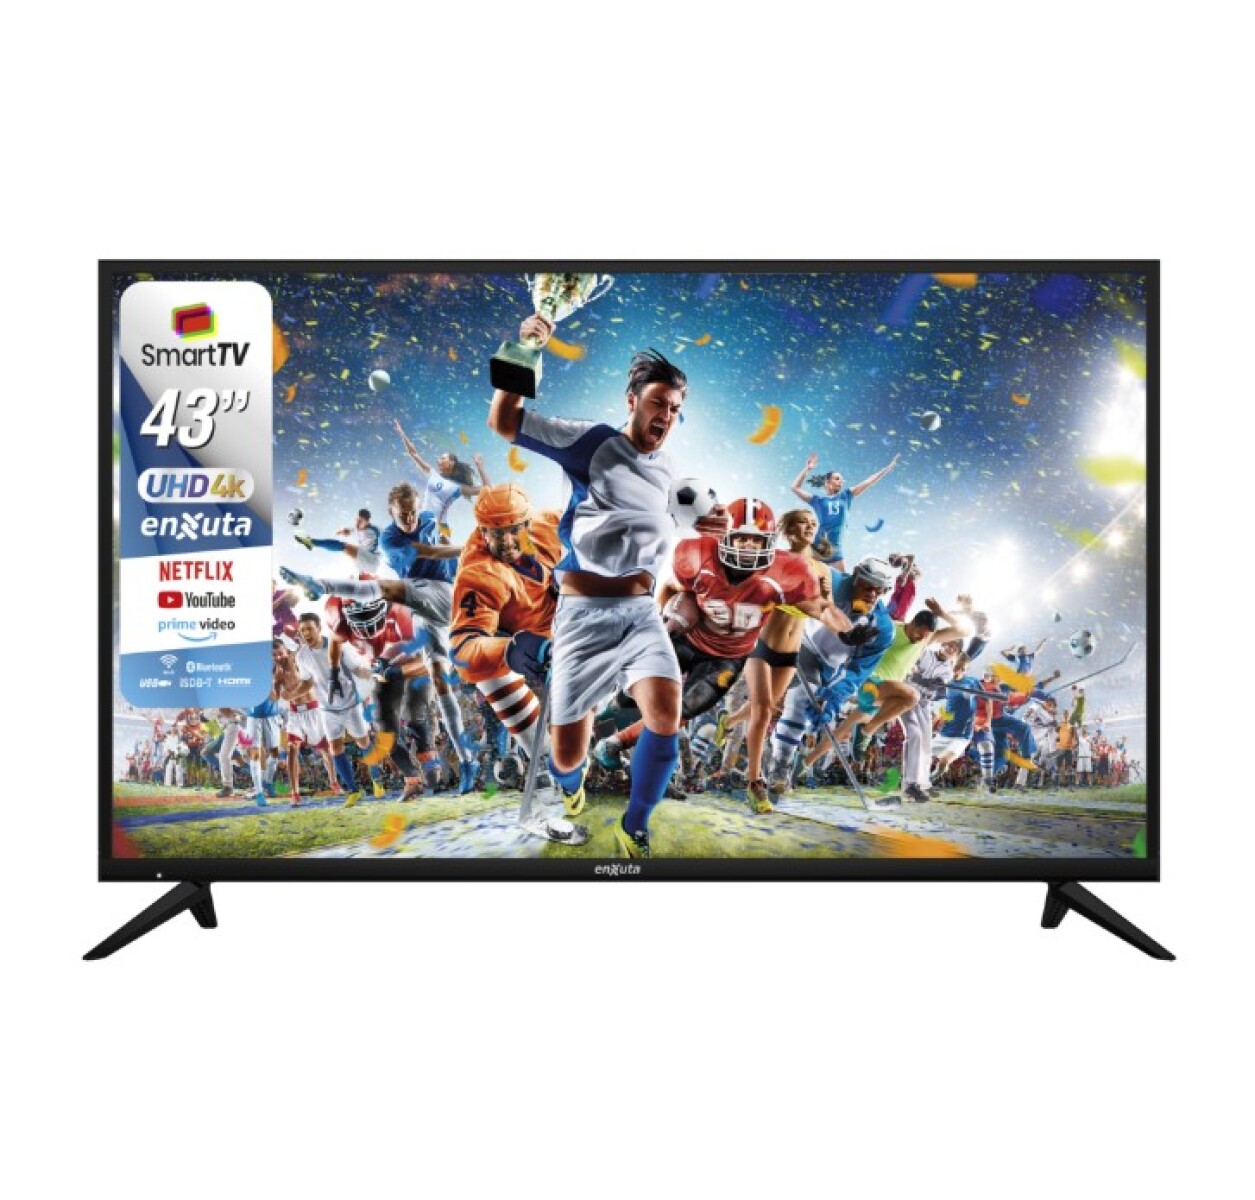 SMART TV 43” ULTRA HD 4K 